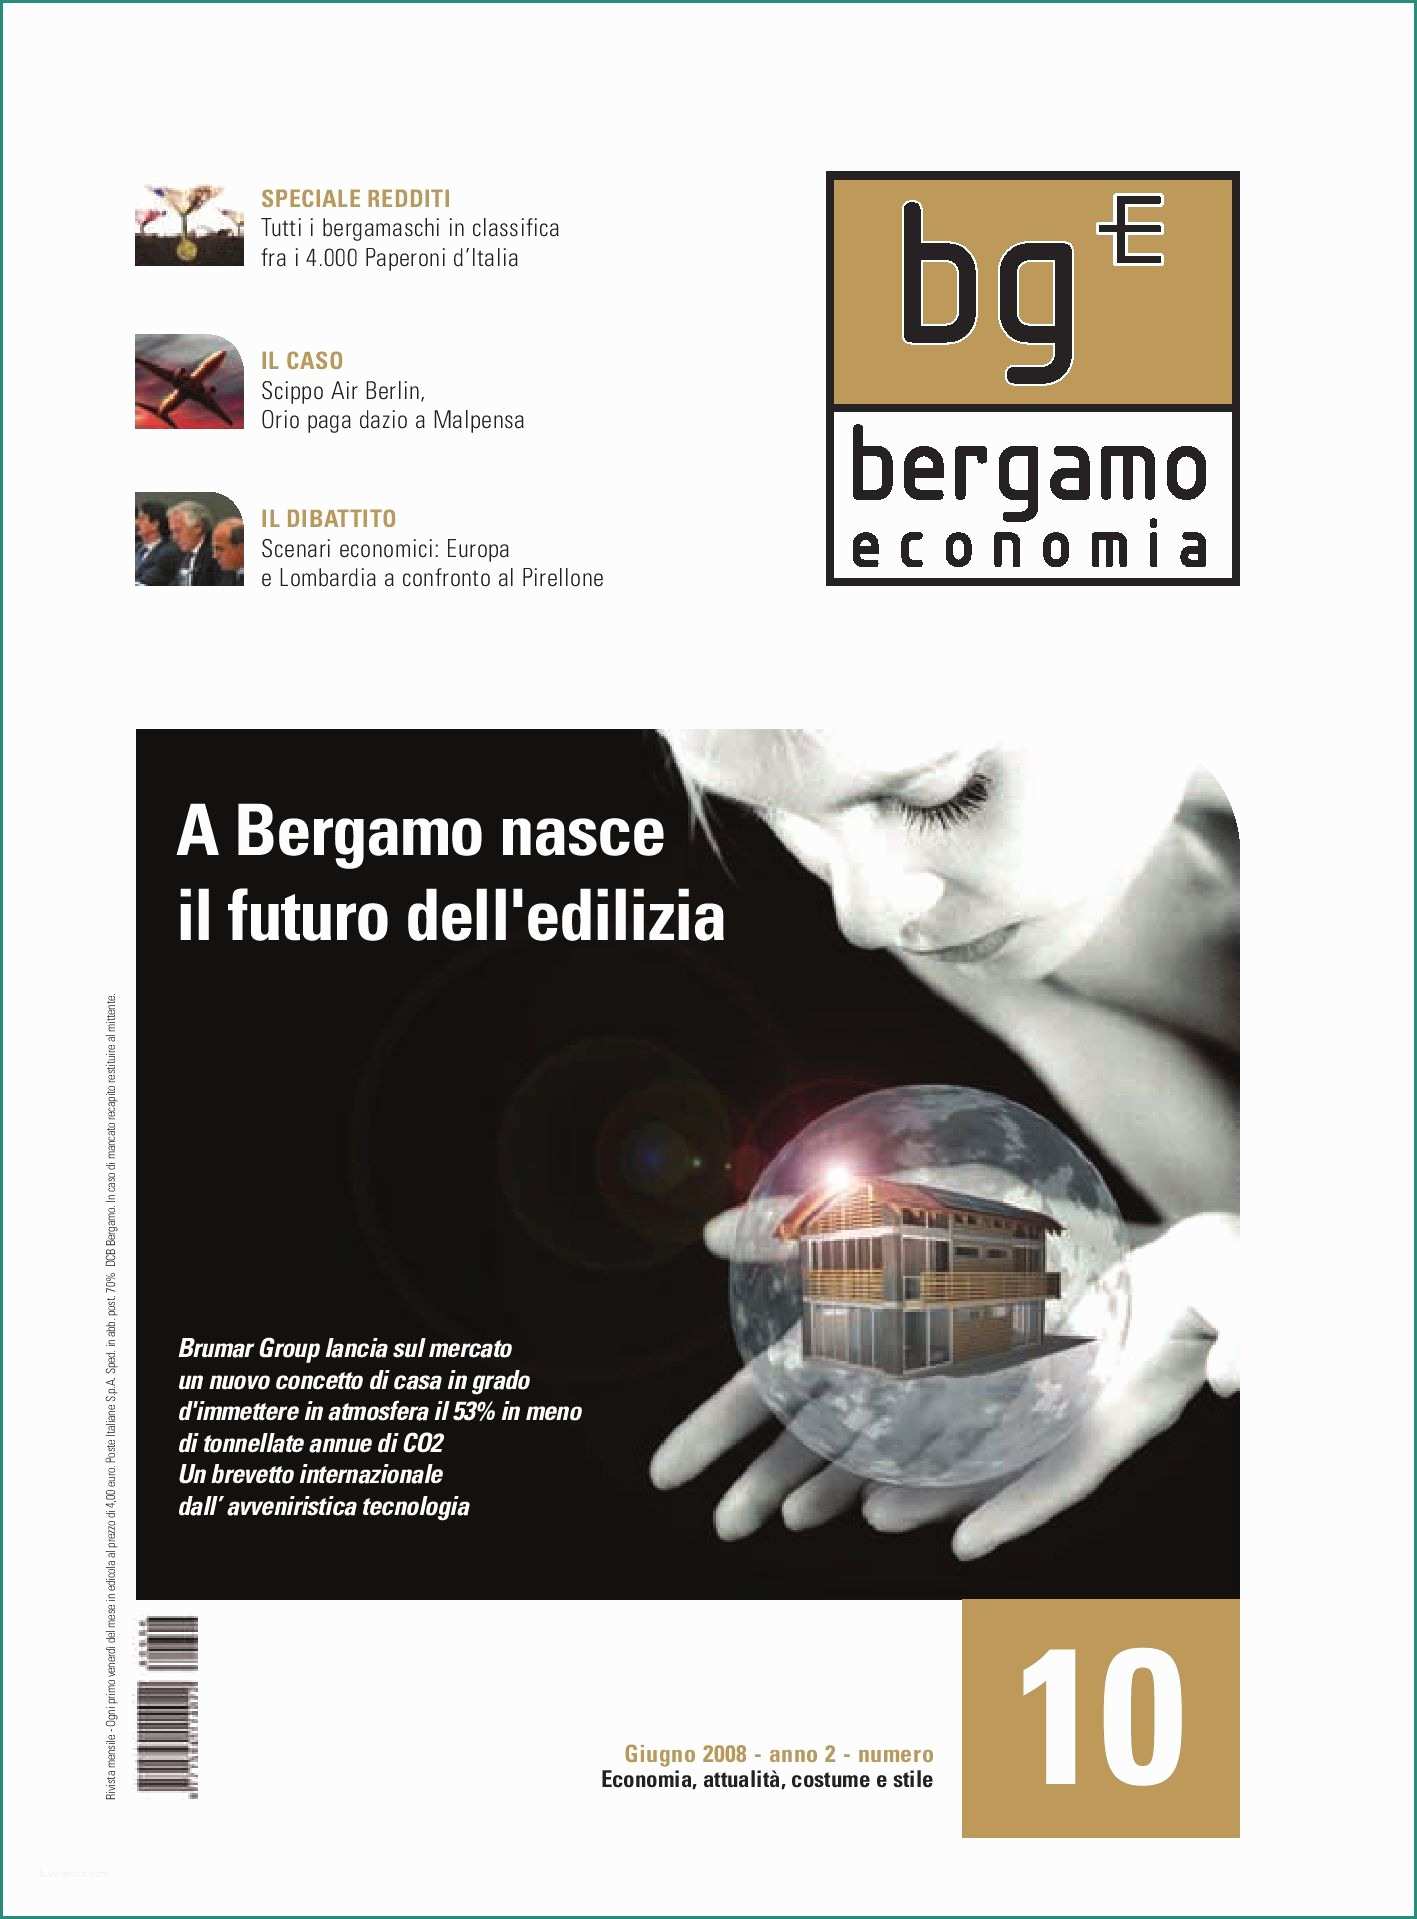 Serbatoio Acqua Piovana Prezzi E Bergamo Economia 10 by Stefano Morleo issuu